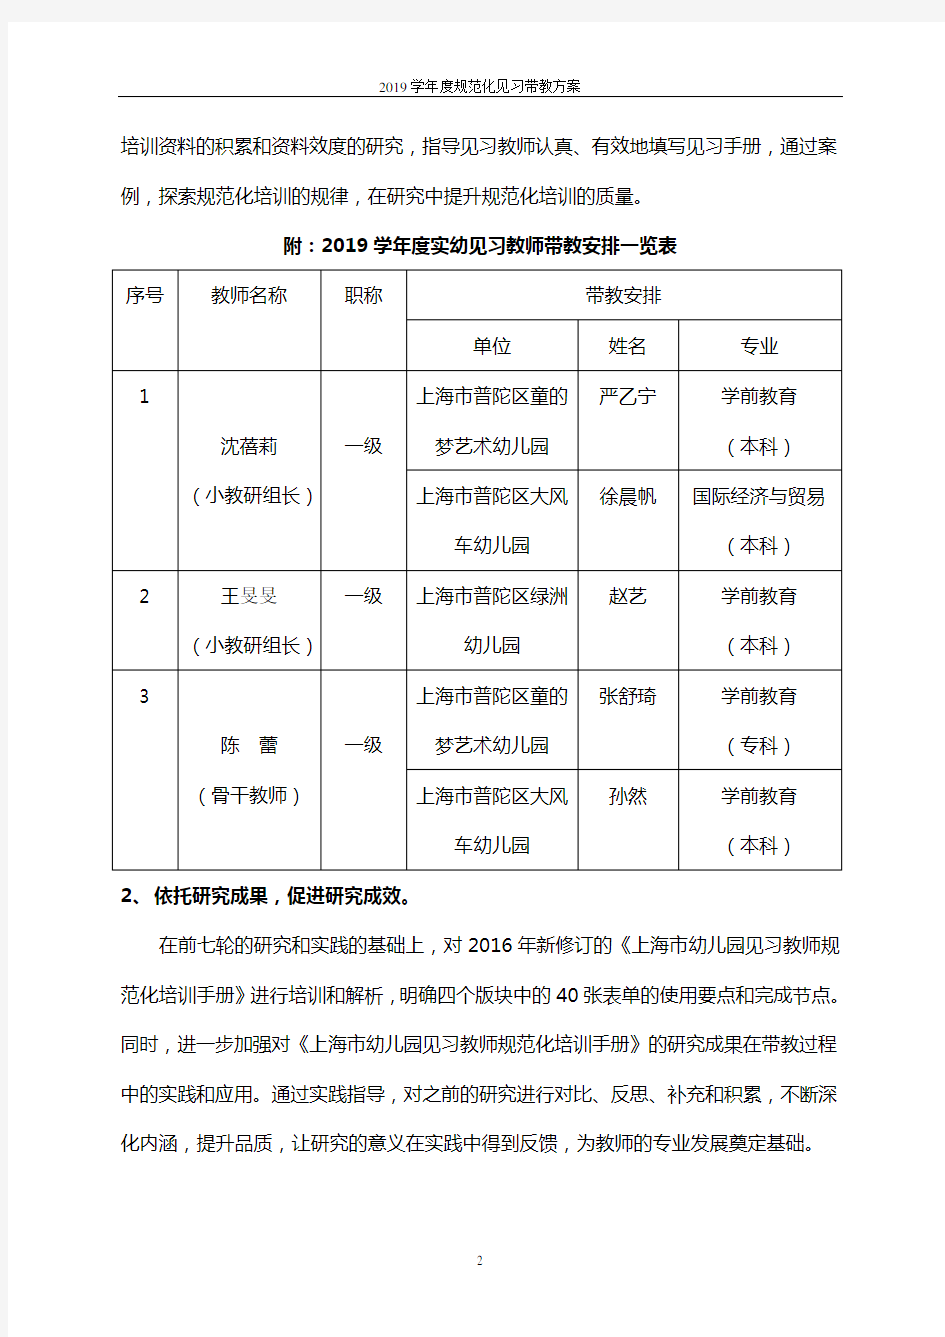 上海市实验幼儿园见习规范化带教方案(2019.10)